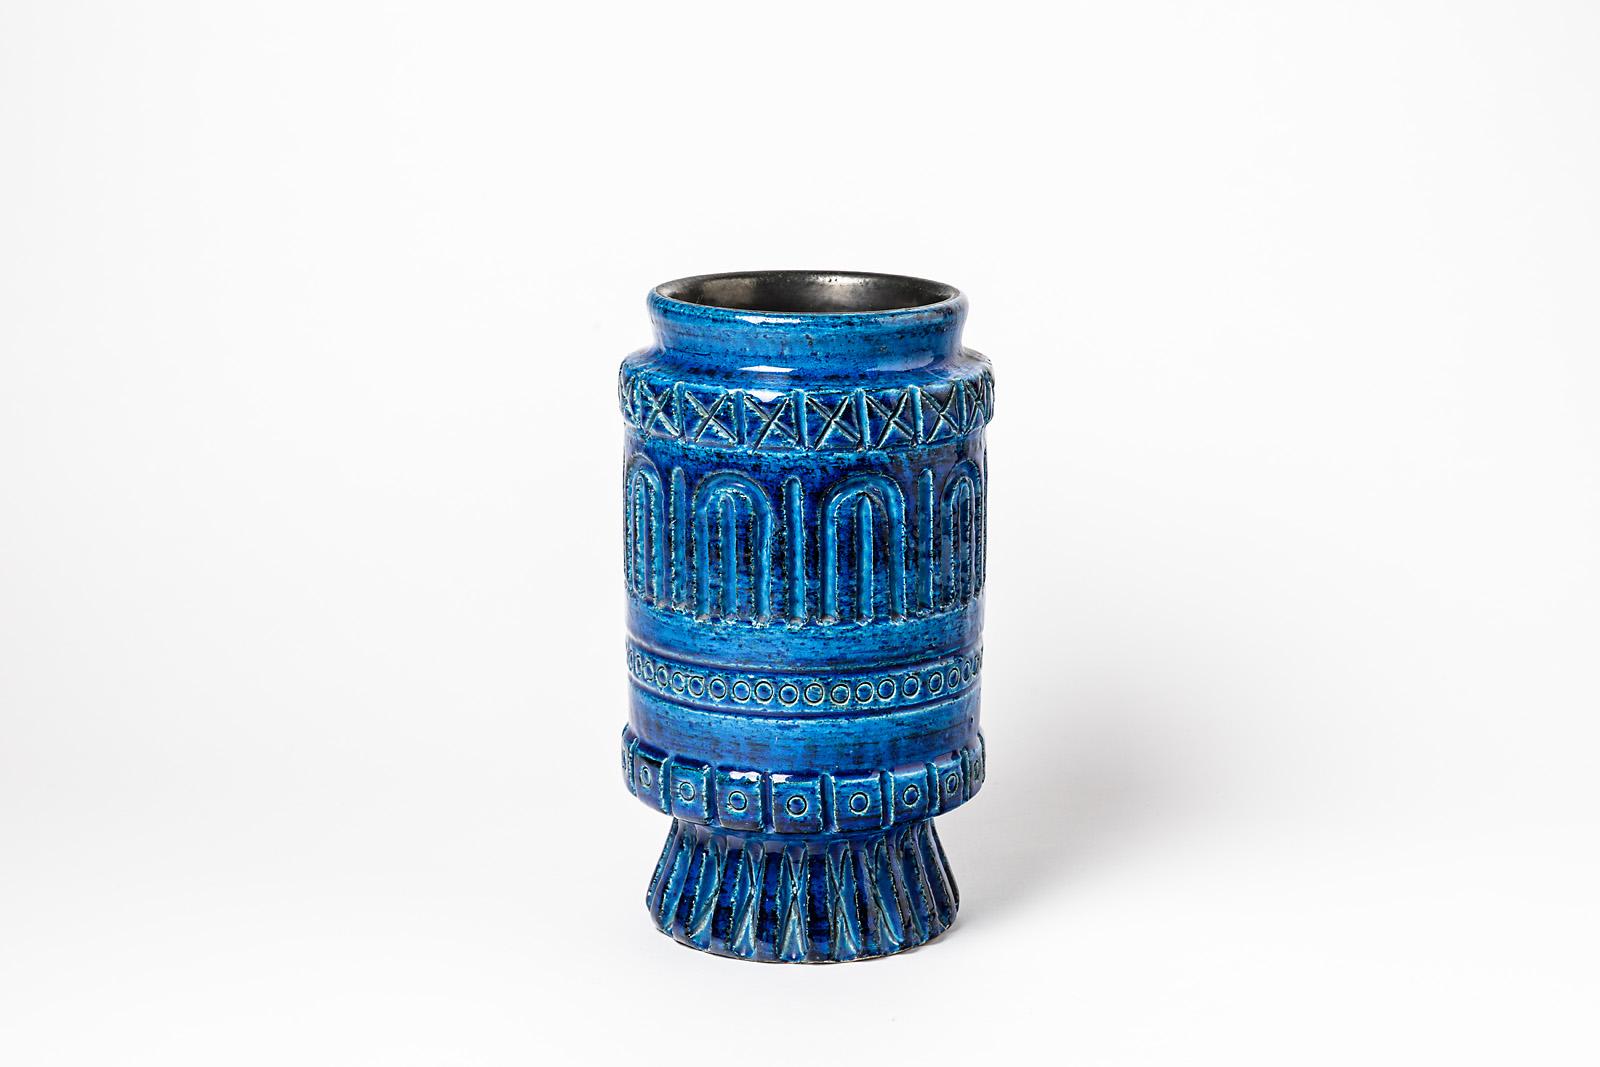 Un vase en céramique à décor de glaçure bleue signé Pol Chambost.
Conditions d'origine parfaites.
Signé sous la base,
circa 1960-1970.